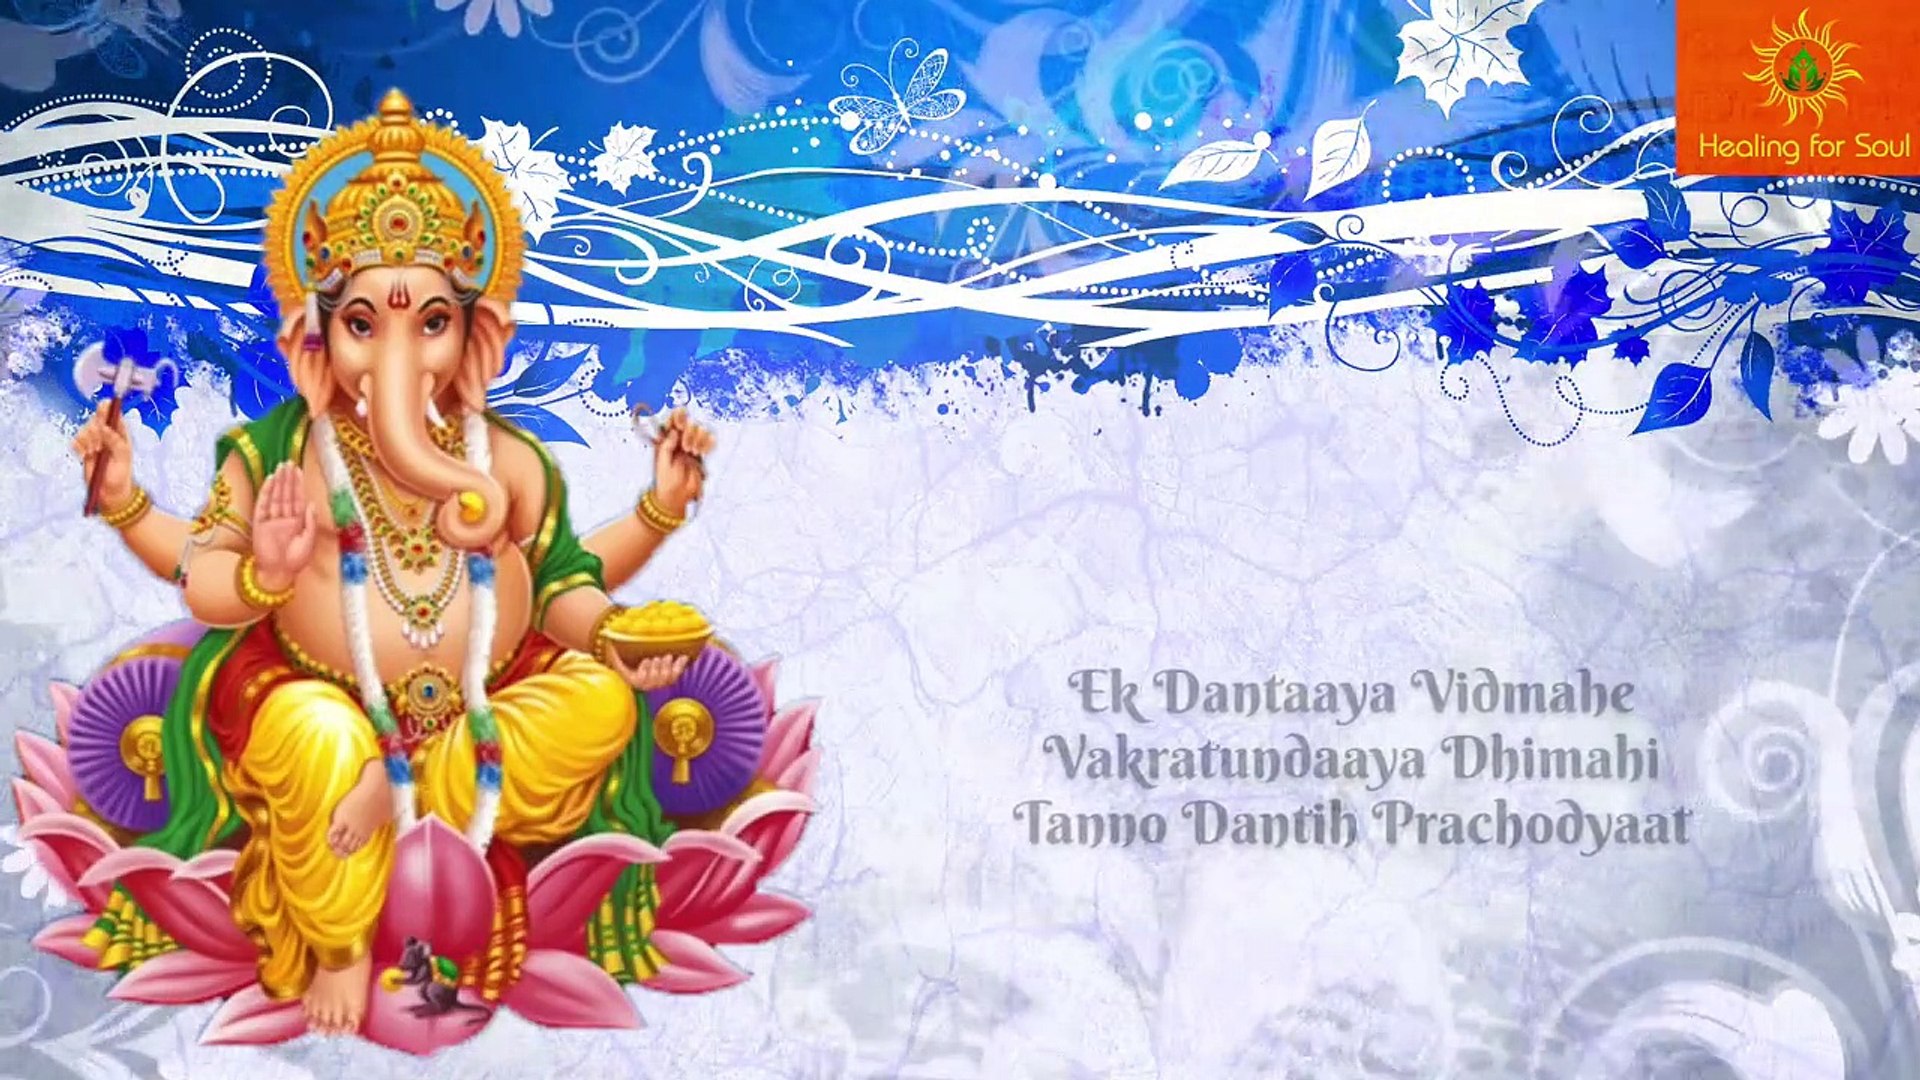 Ganesh Gayatri Mantra - Om Ekadantaya Vidmahe - video Dailymotion